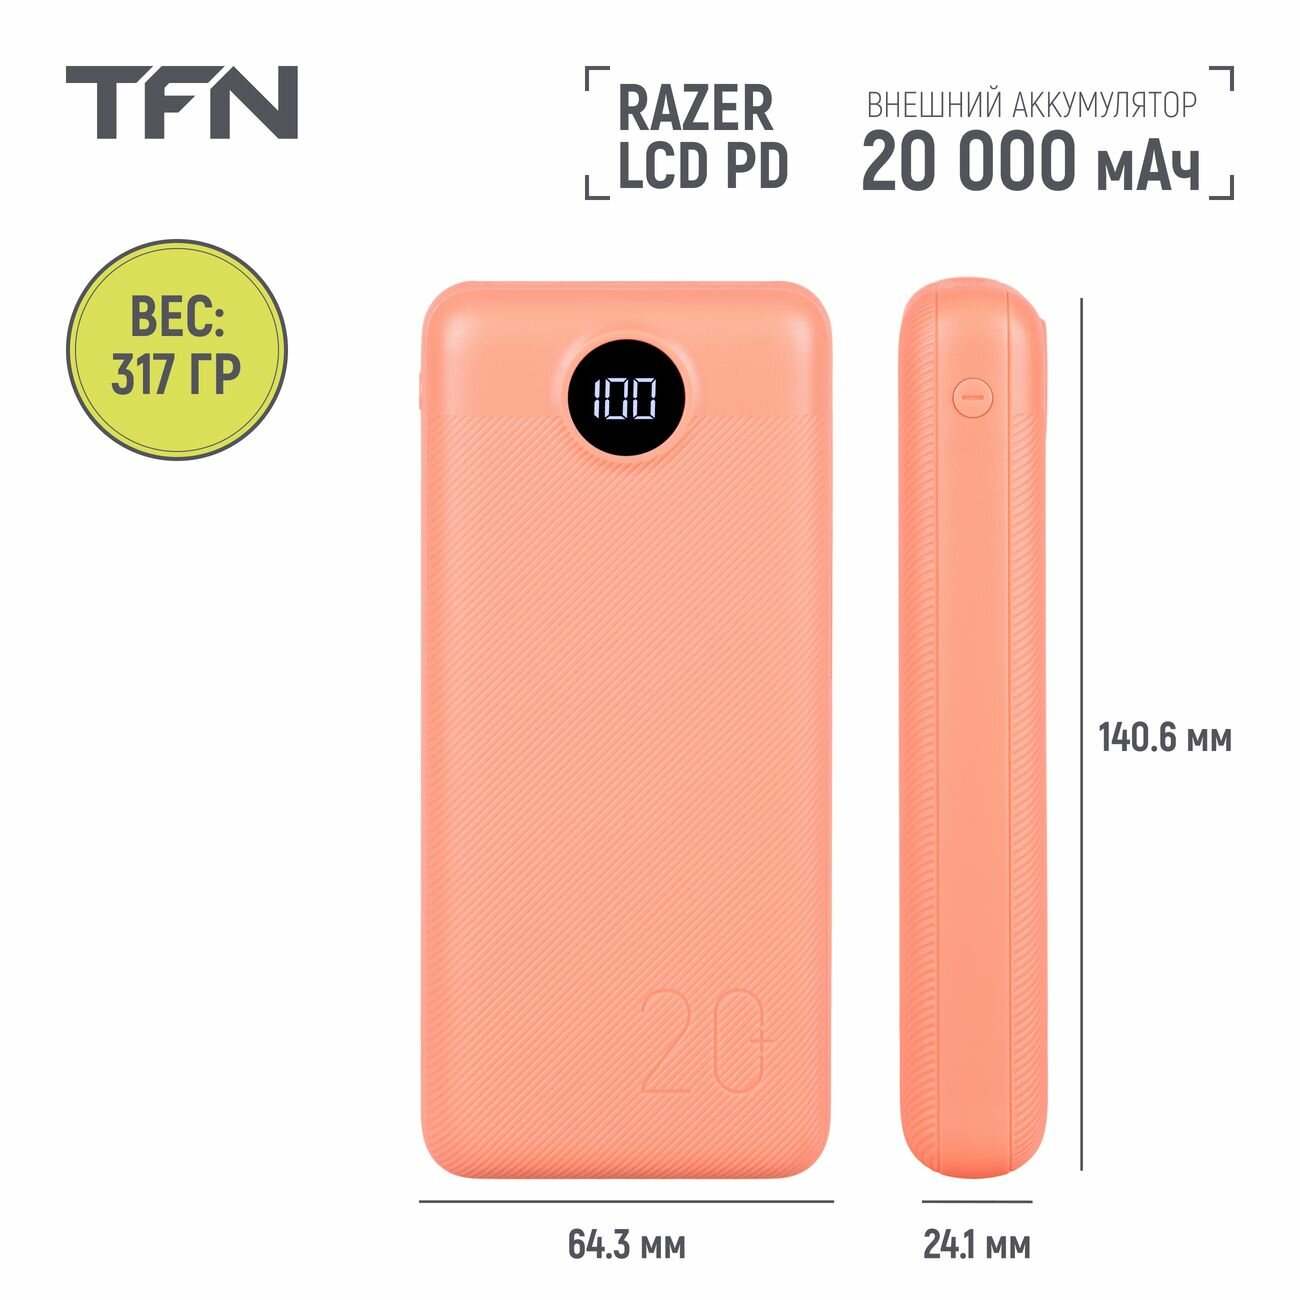 Внешний аккумулятор TFN Razer LCD PD 20000 мАч светло-оранжевый